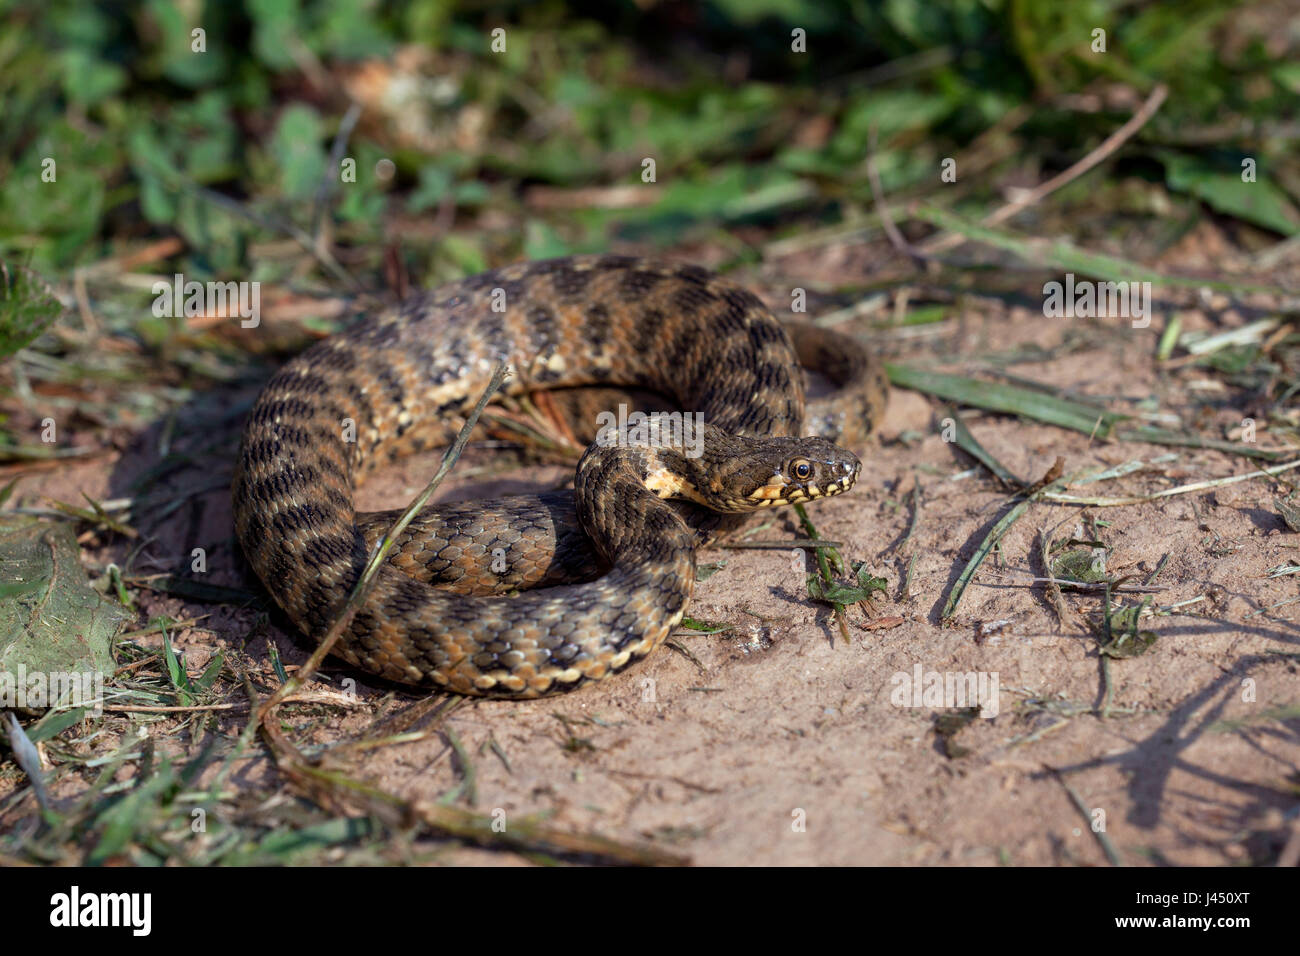 basking adult viperine snake Stock Photo